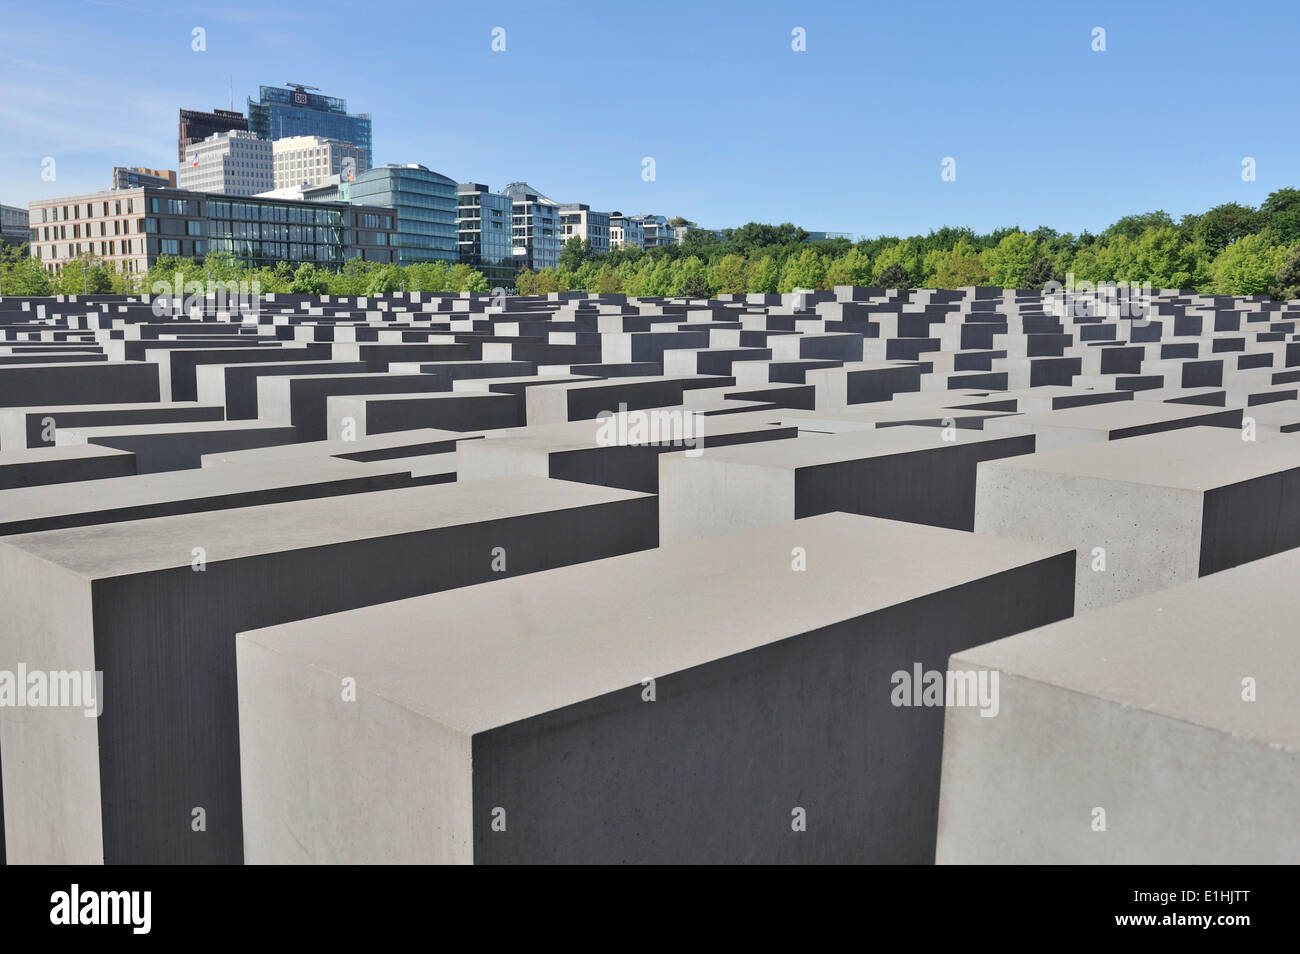 Mémorial aux Juifs assassinés d'Europe ou Holocaust Memorial, Berlin, Allemagne Banque D'Images